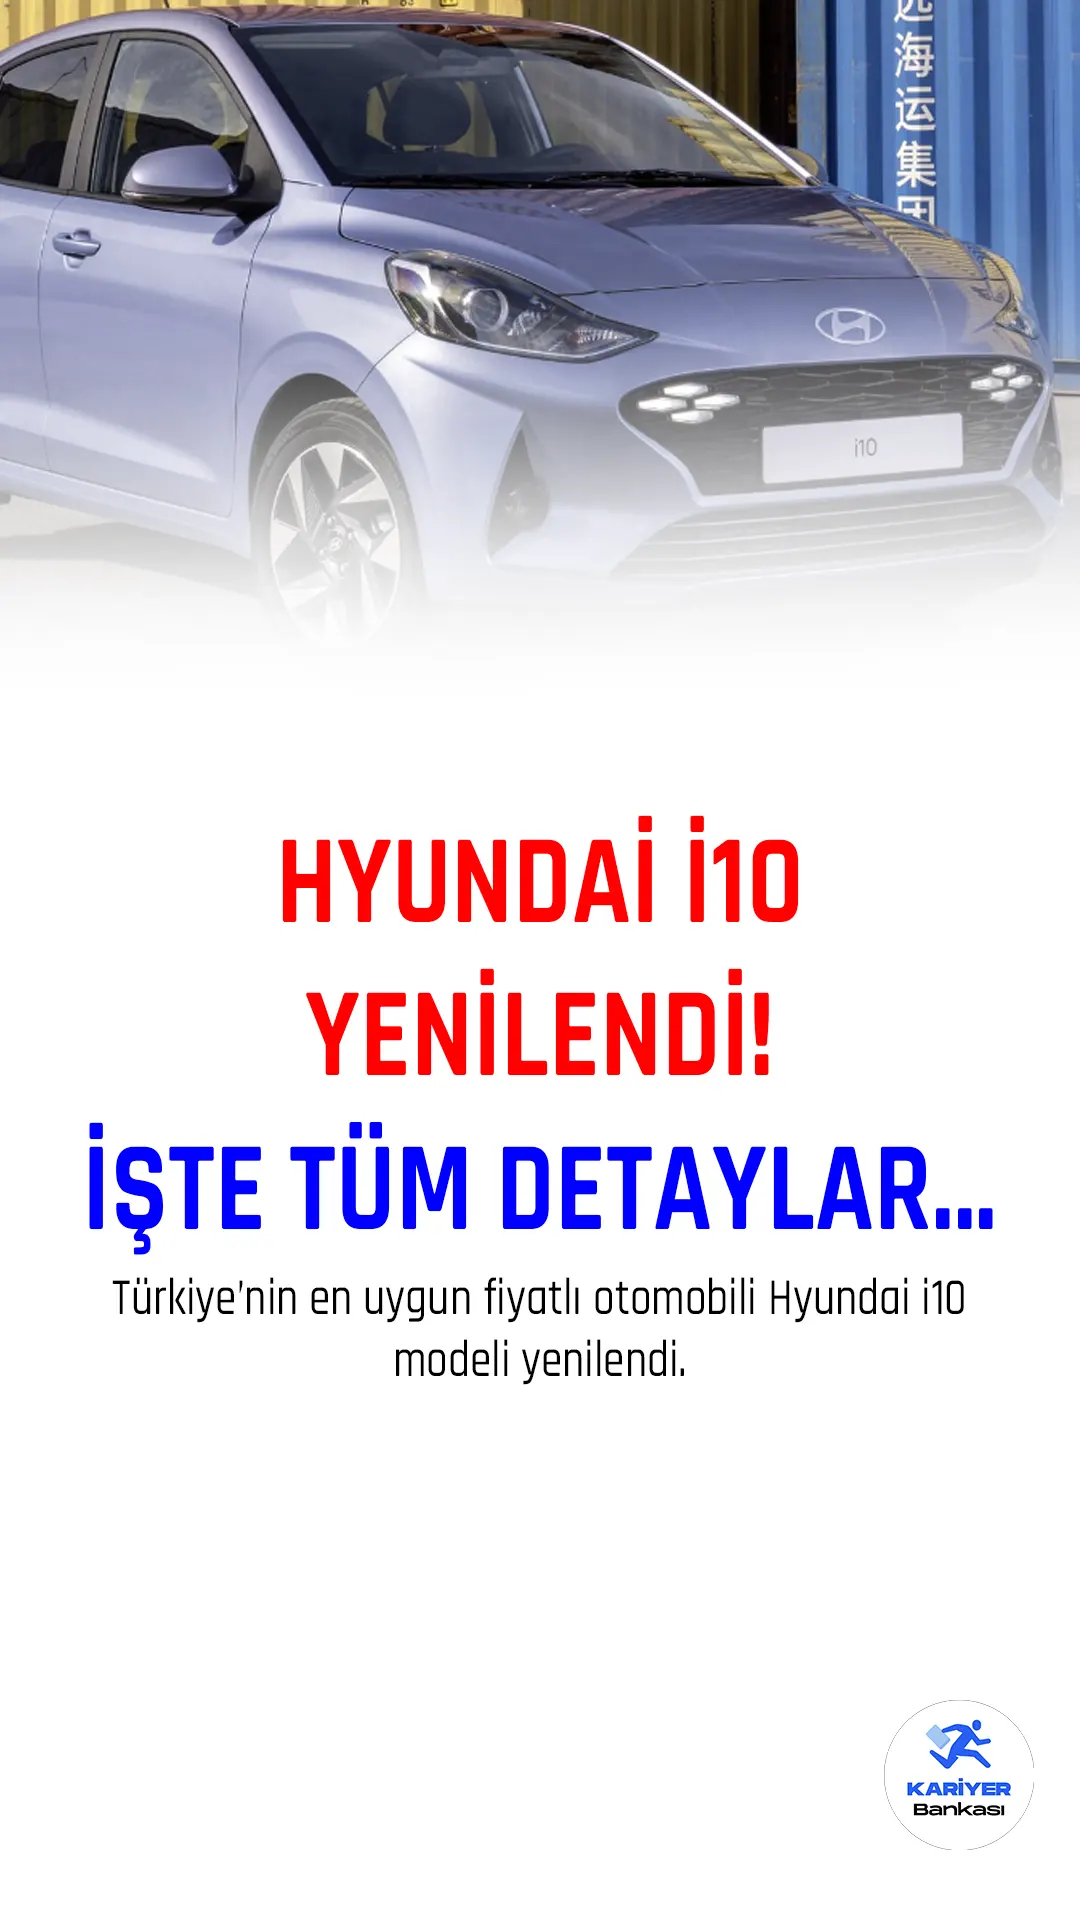 Hyundai, Türkiye'deki en uygun fiyatlı araç olan i10'u güncelledi. Tasarımında ufak tefek değişiklikler yapılan araç, donanım ve teknolojik özellikleriyle de yenilendi. Yeni 2023 model i10, son etkinlikte tanıtıldı. İşte yeni Hyundai i10 tüm detayları...